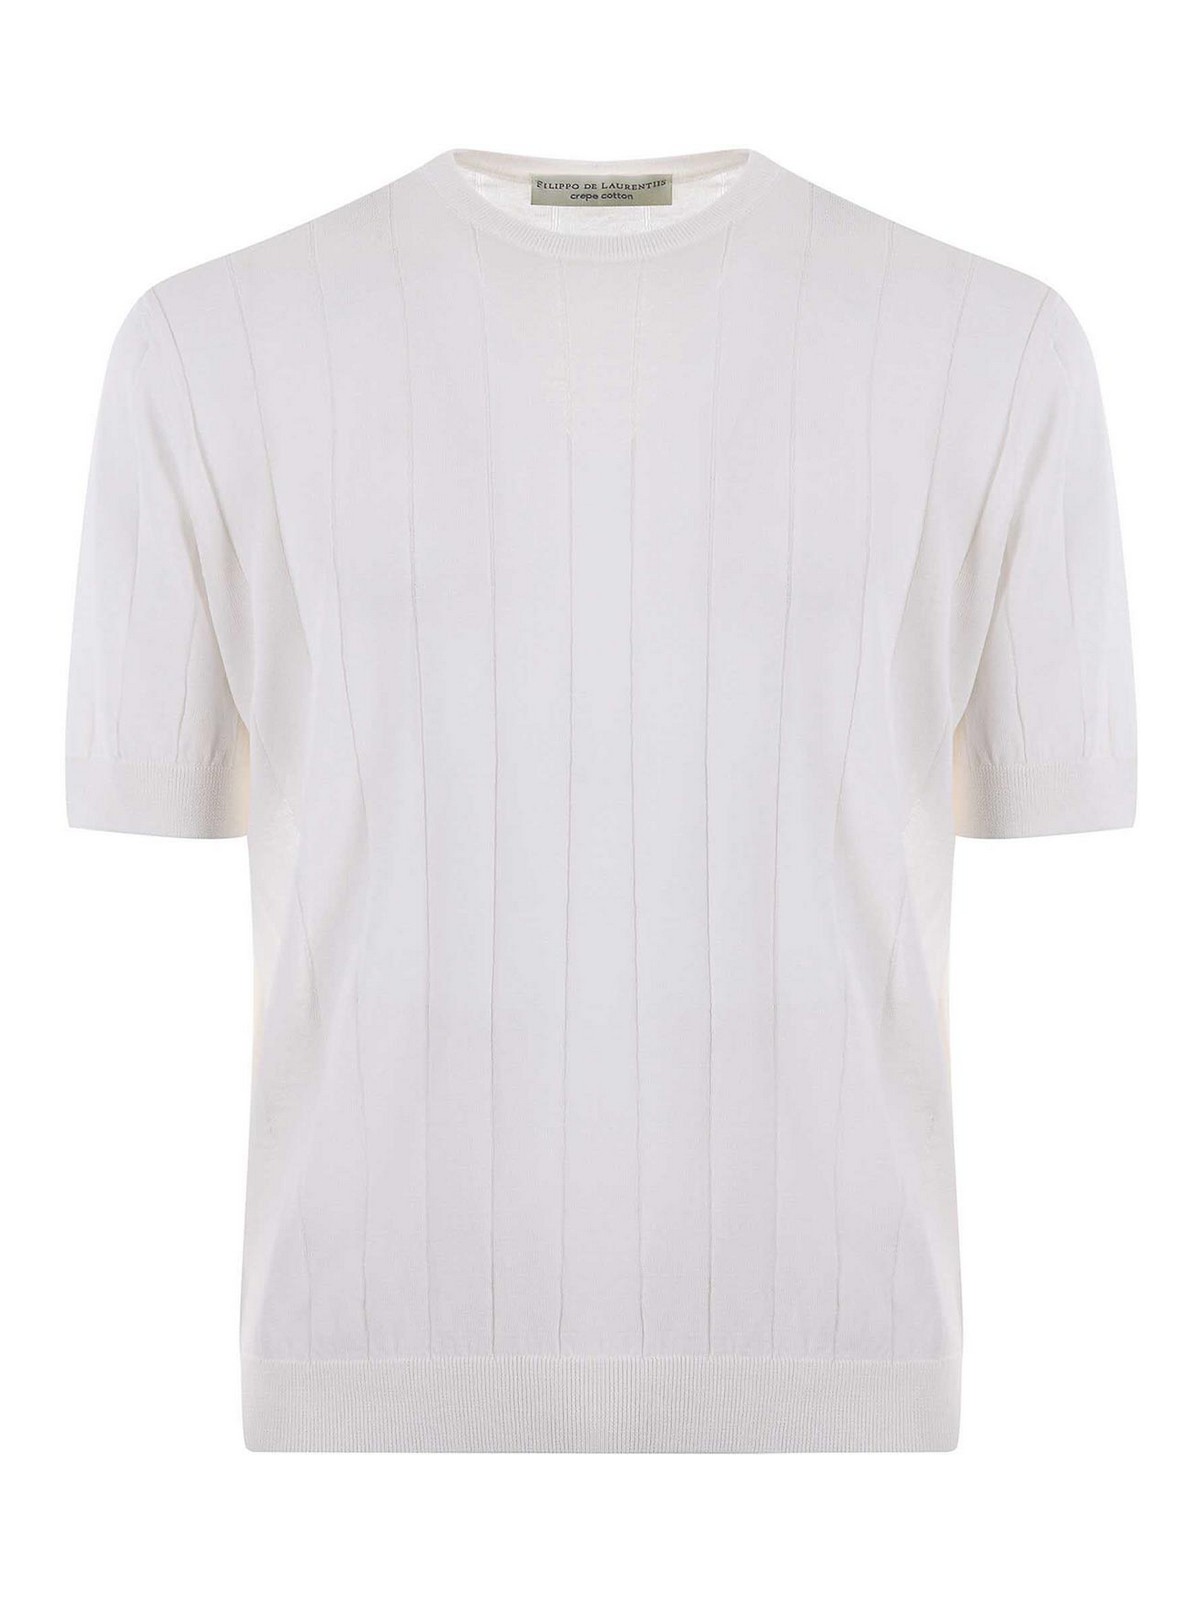 Shop Filippo De Laurentiis Camiseta - Blanco In White